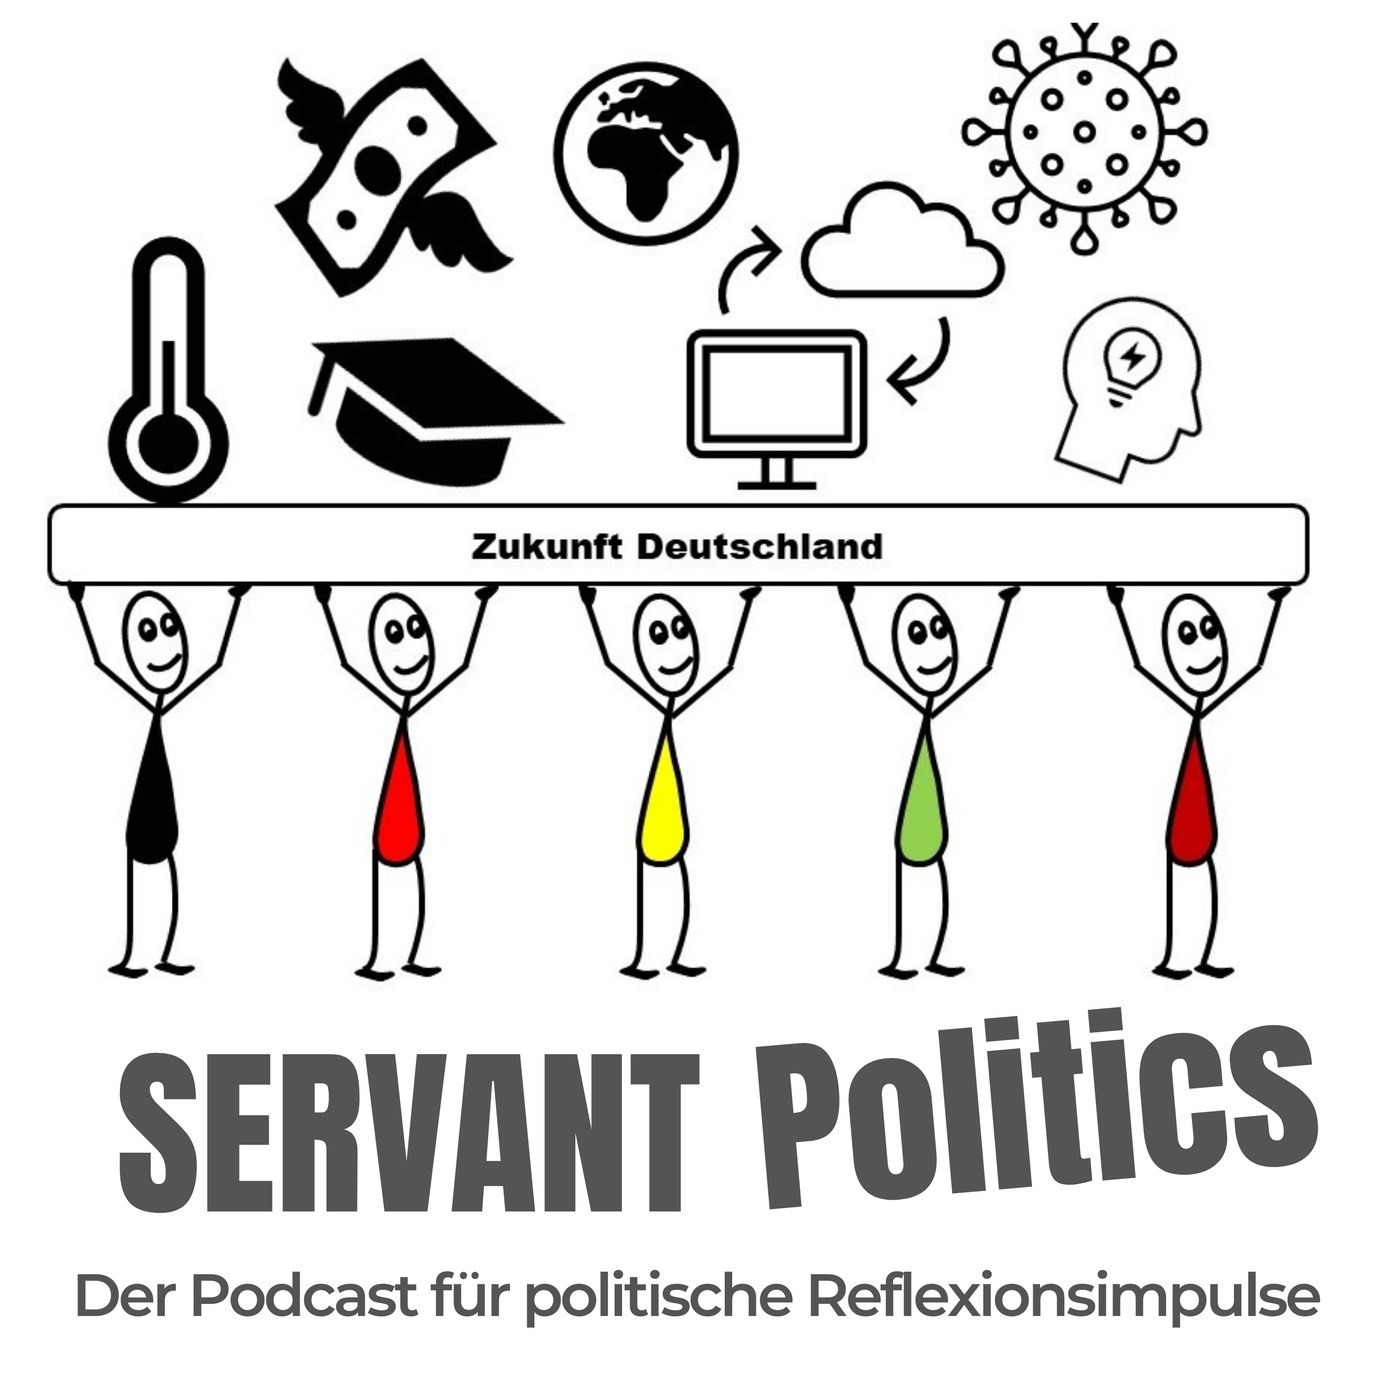 #126 Servant Politics im Gespräch mit Jonas Israel (Referent für Digitale Medien Landeszentrale polit. Bildung NRW)